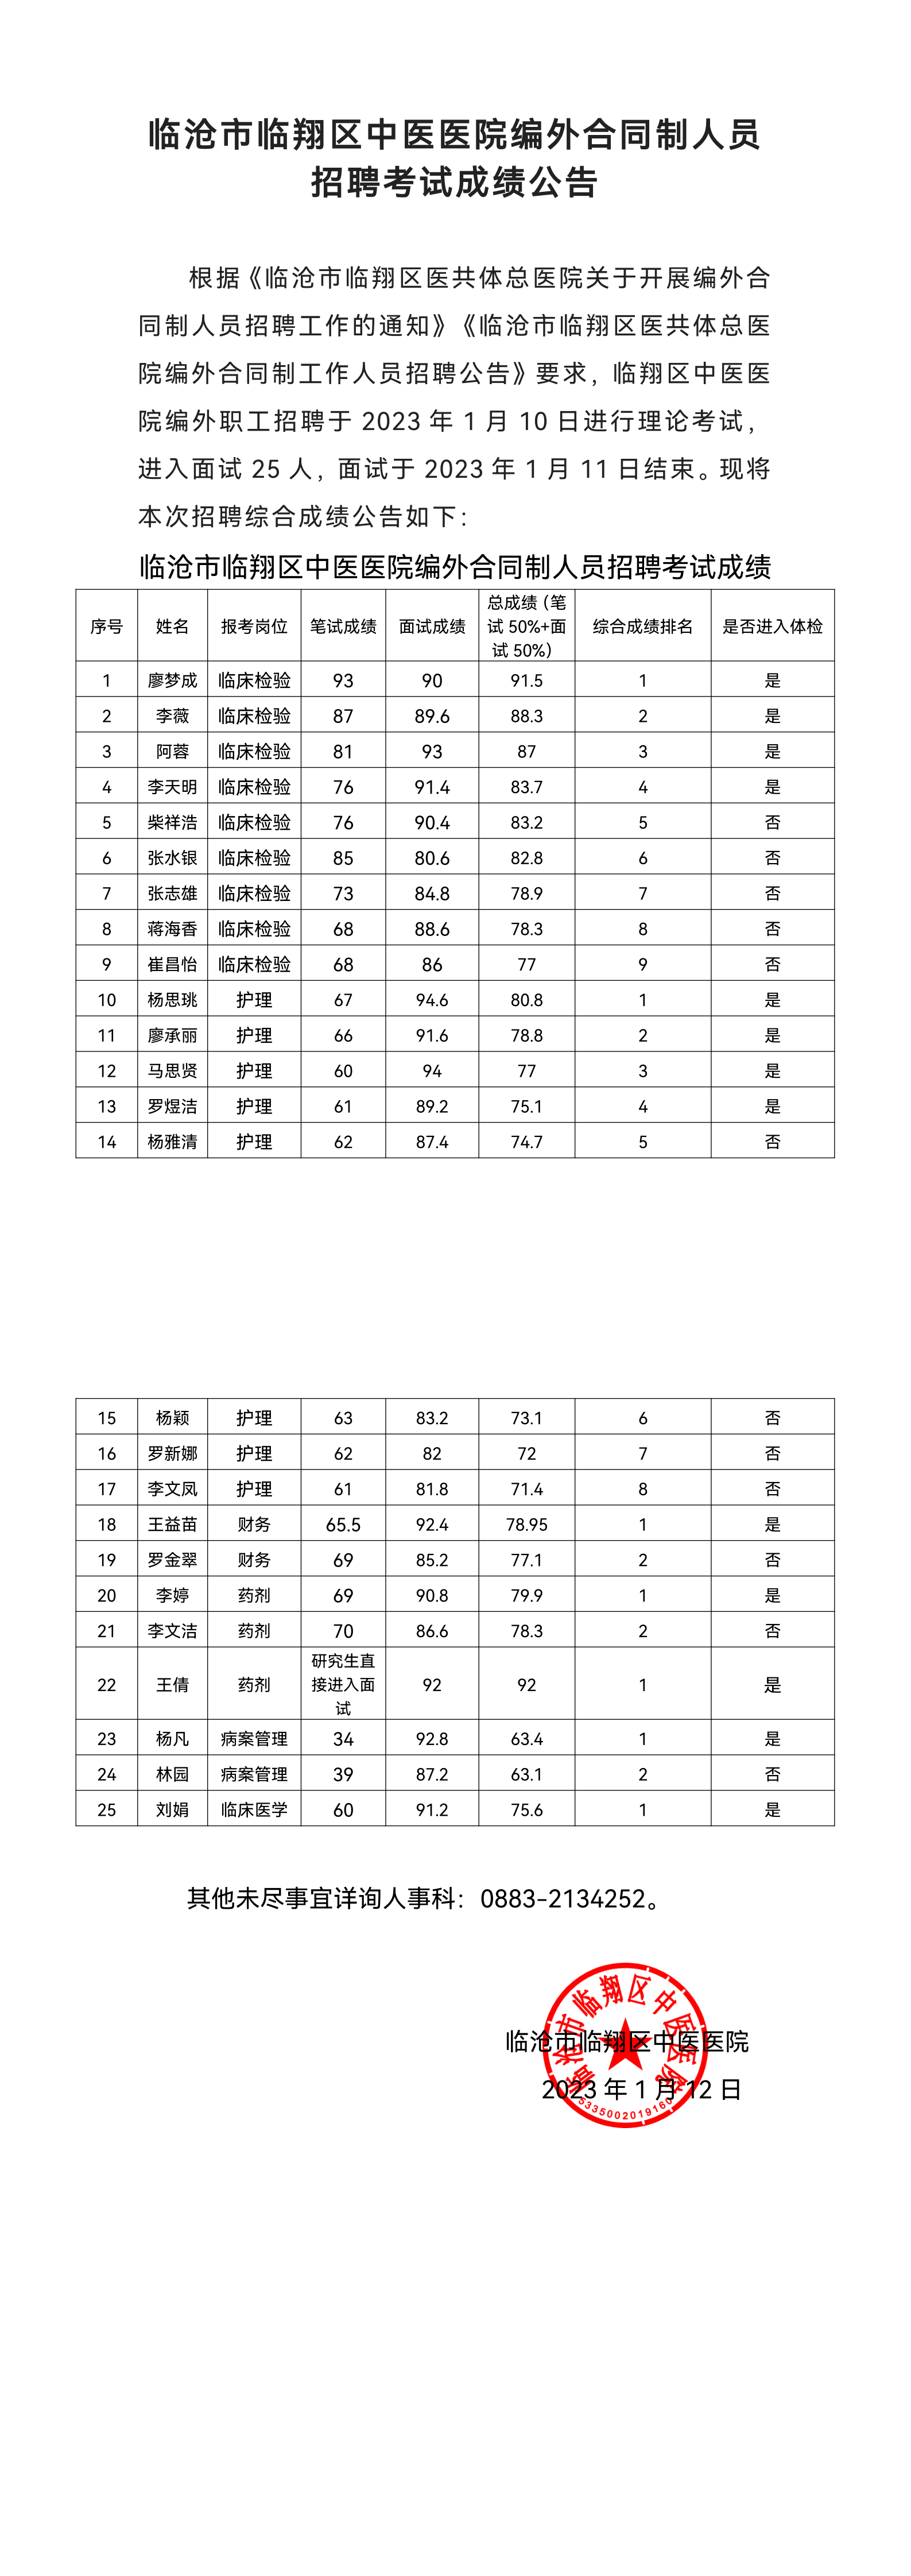 临沧市国精产品无套视频未删减版编外合同制人员招聘考试成绩公告(3)_00.png